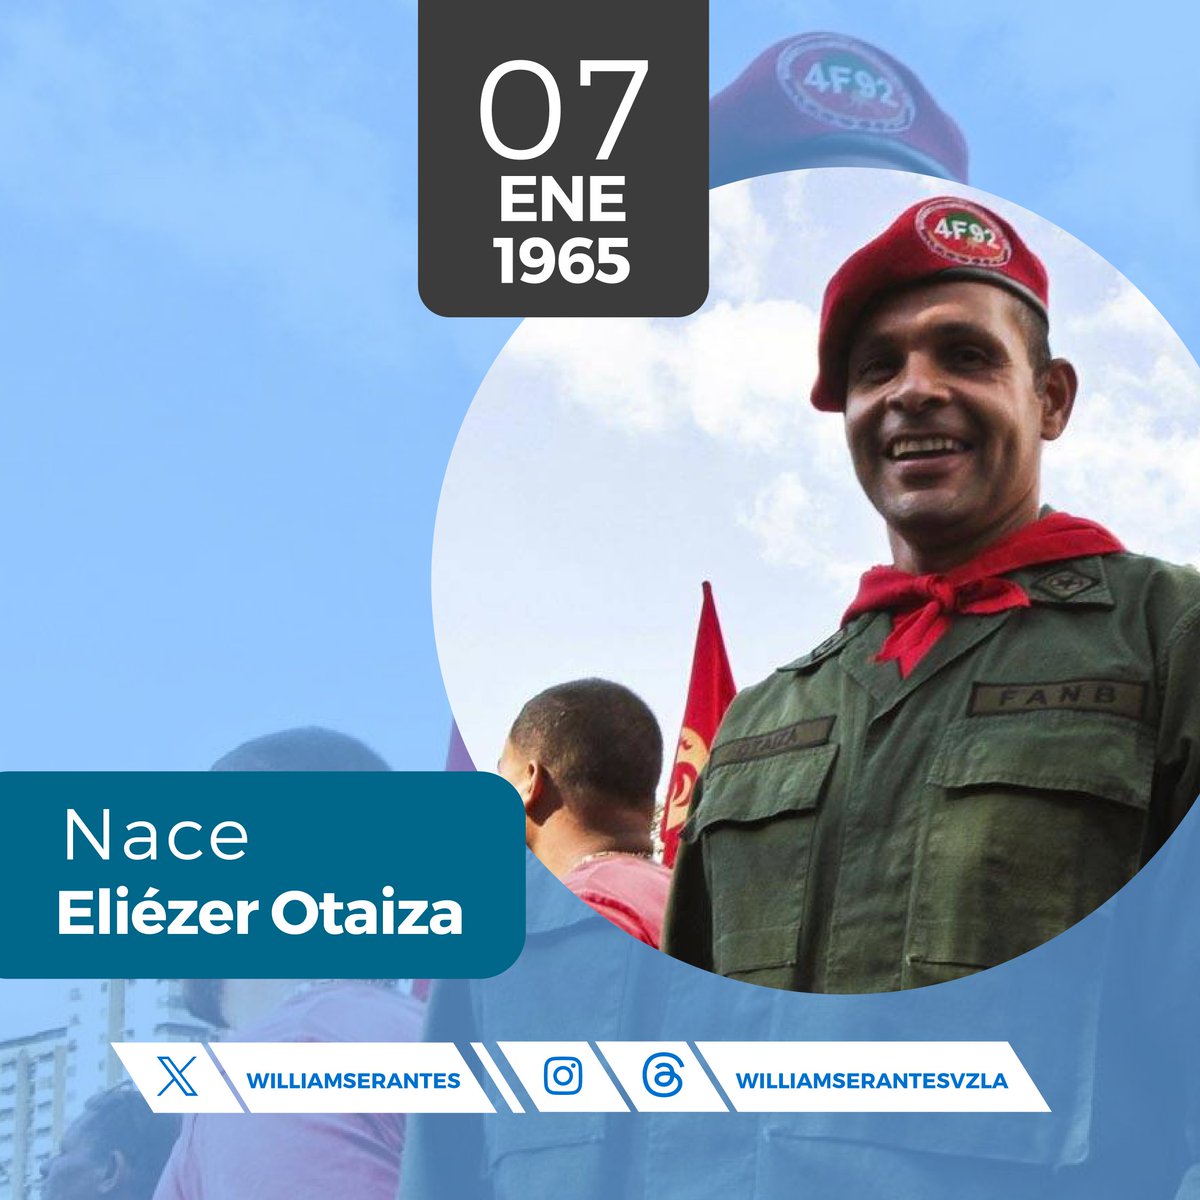 Hoy conmemoramos el nacimiento de Eliézer Otaiza, líder valiente y defensor incansable de la justicia. Su legado sigue inspirando el compromiso con la lucha por un mundo más justo y solidario. 🌟🇻🇪 #EliézerOtaiza #7Ene
@NicolasMaduro 
@delcyrodriguezv